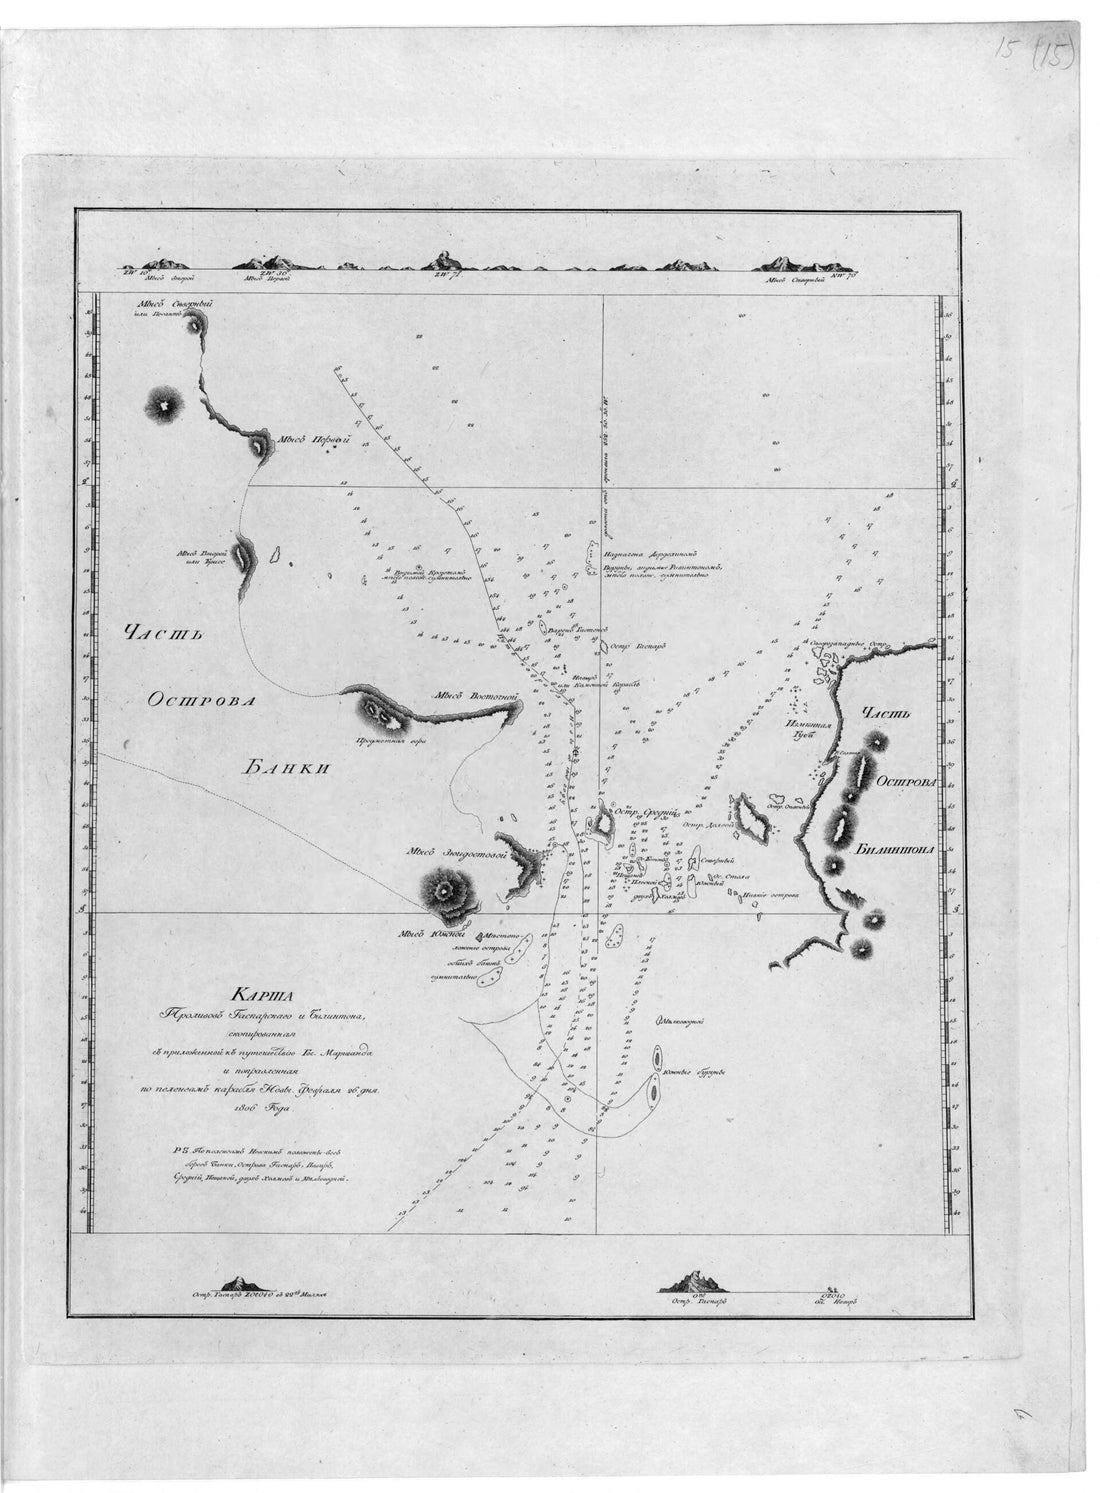 This old map of Karta Prolivov Gasparskogo I Bilintona, Skopirovannai︠a︡ S Prilozhennoĭ K Puteshestvii︠u︡ Gos. Marshanda I Popravlennai︠a︡ Po Pelengam Korabli︠a︡ Nevy. Fevrali︠a︡ 26 Dni︠a︡ 1806 Goda. (Карта проливов 